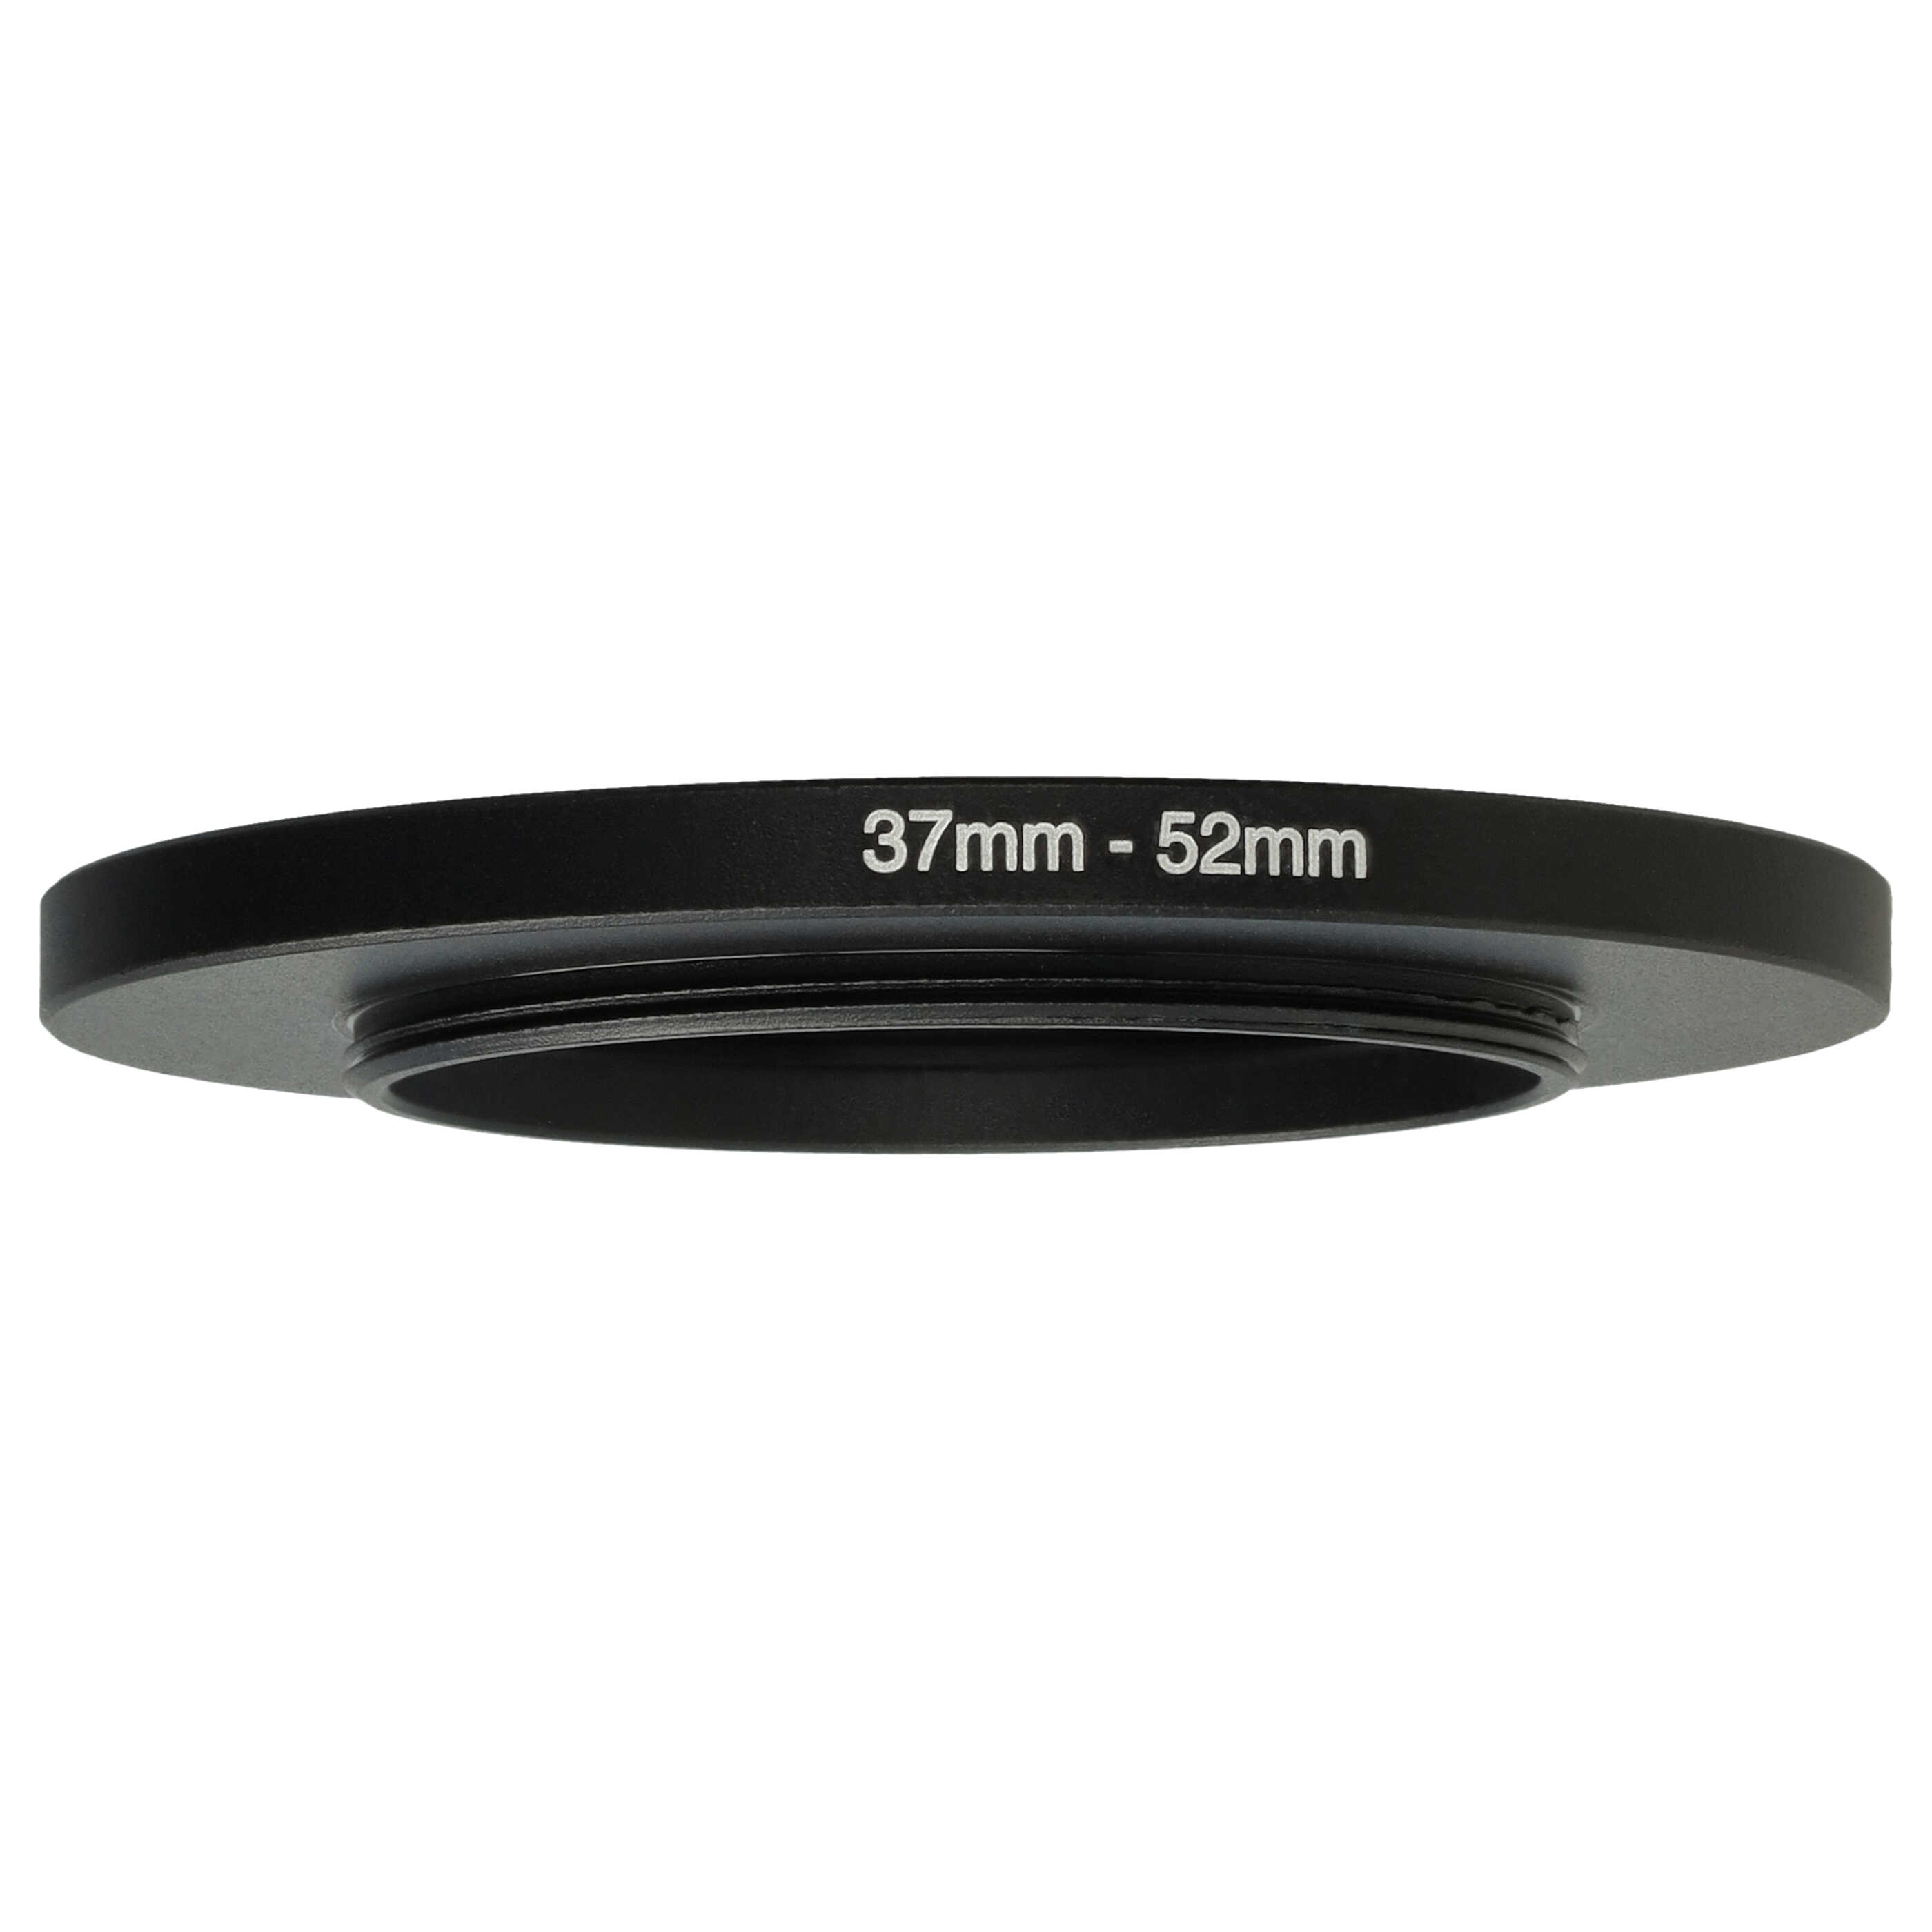 Redukcja filtrowa adapter 37 mm na 52 mm na różne obiektywy 